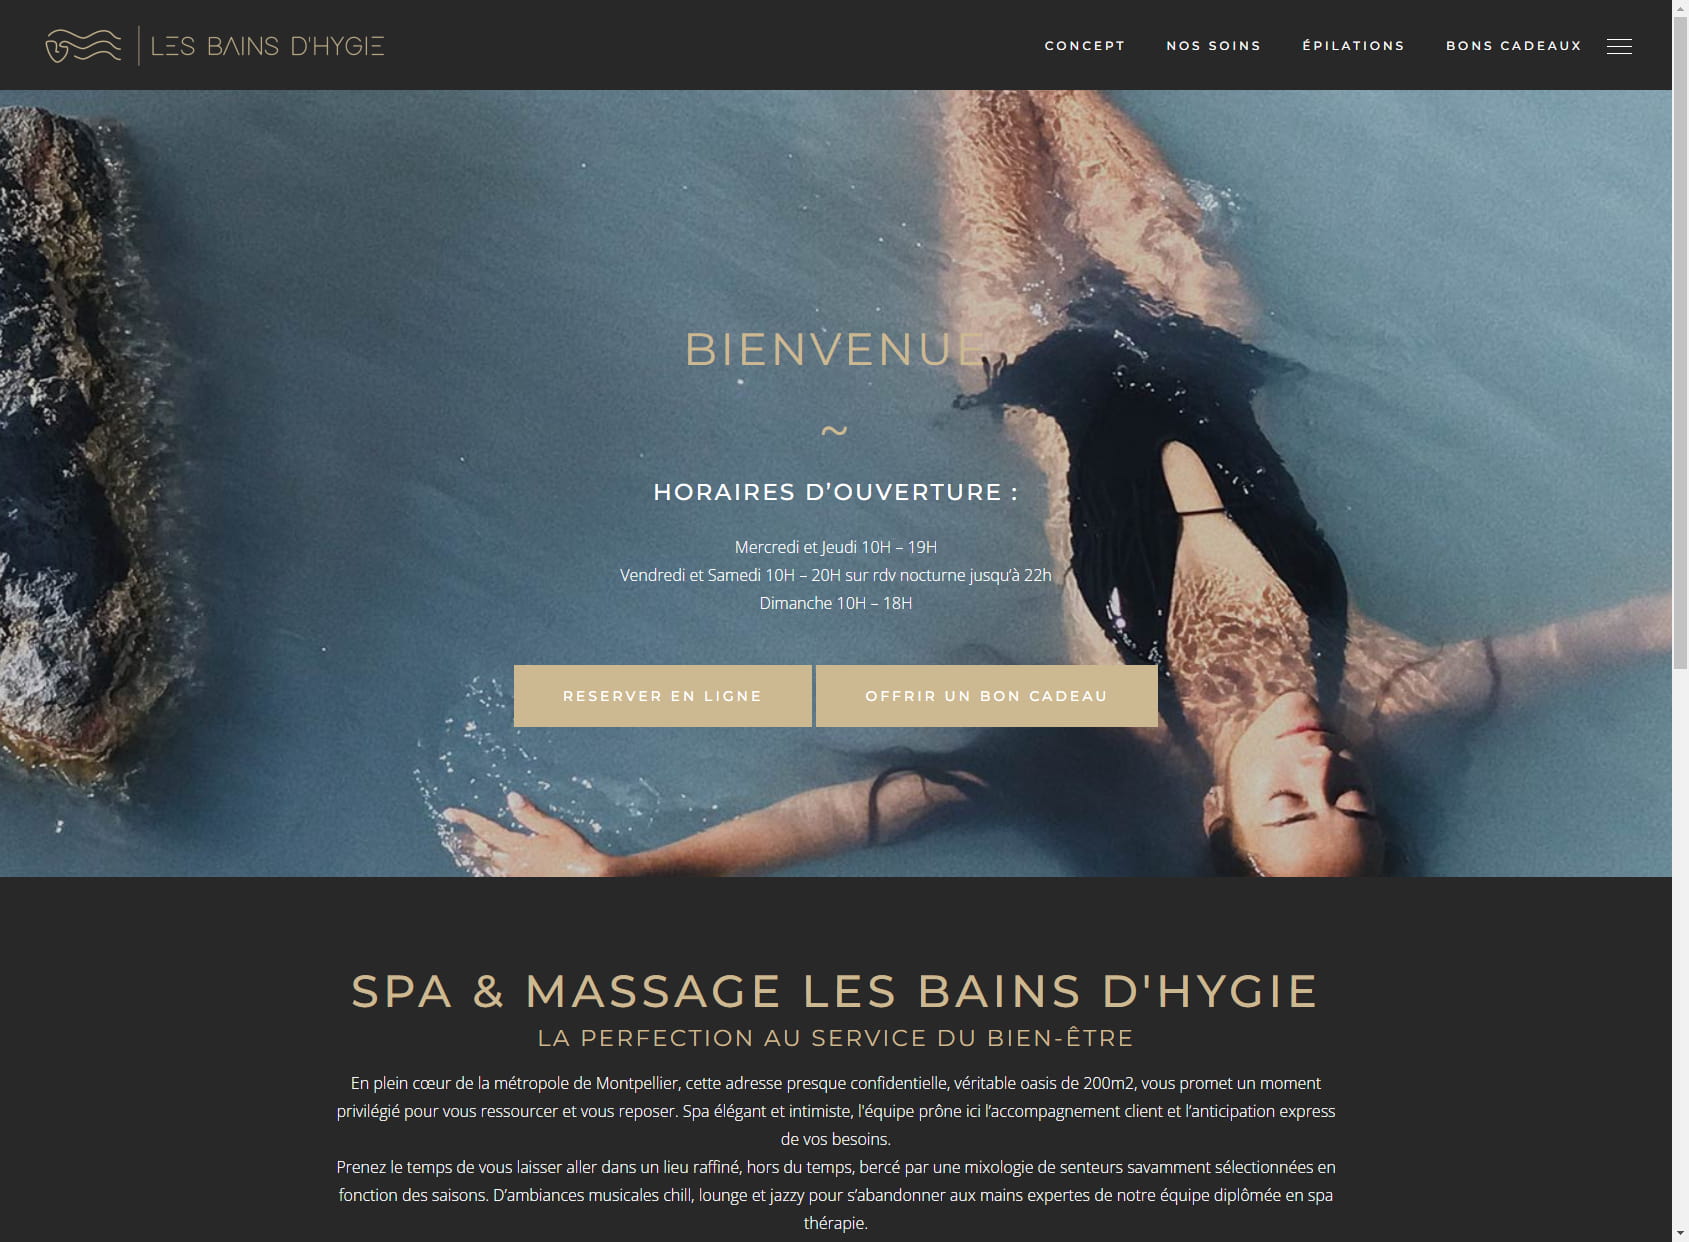 Spa & Massage Les Bains d'Hygie